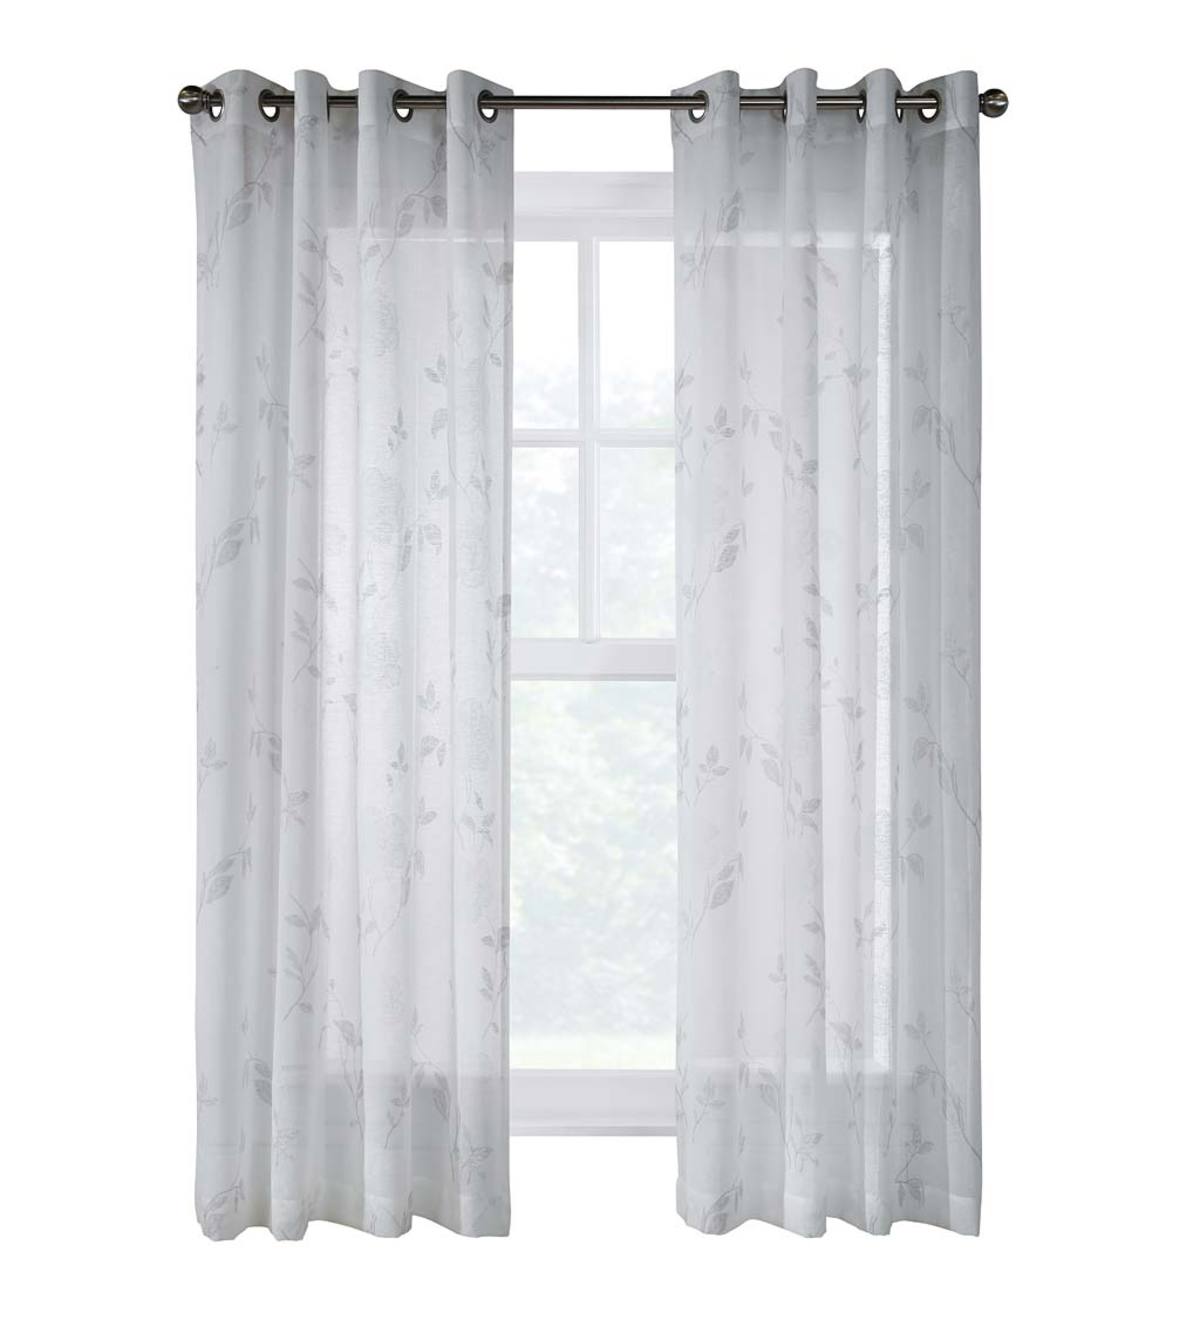 Halifax Grommet Curtain Panel, 52"W x 95"L